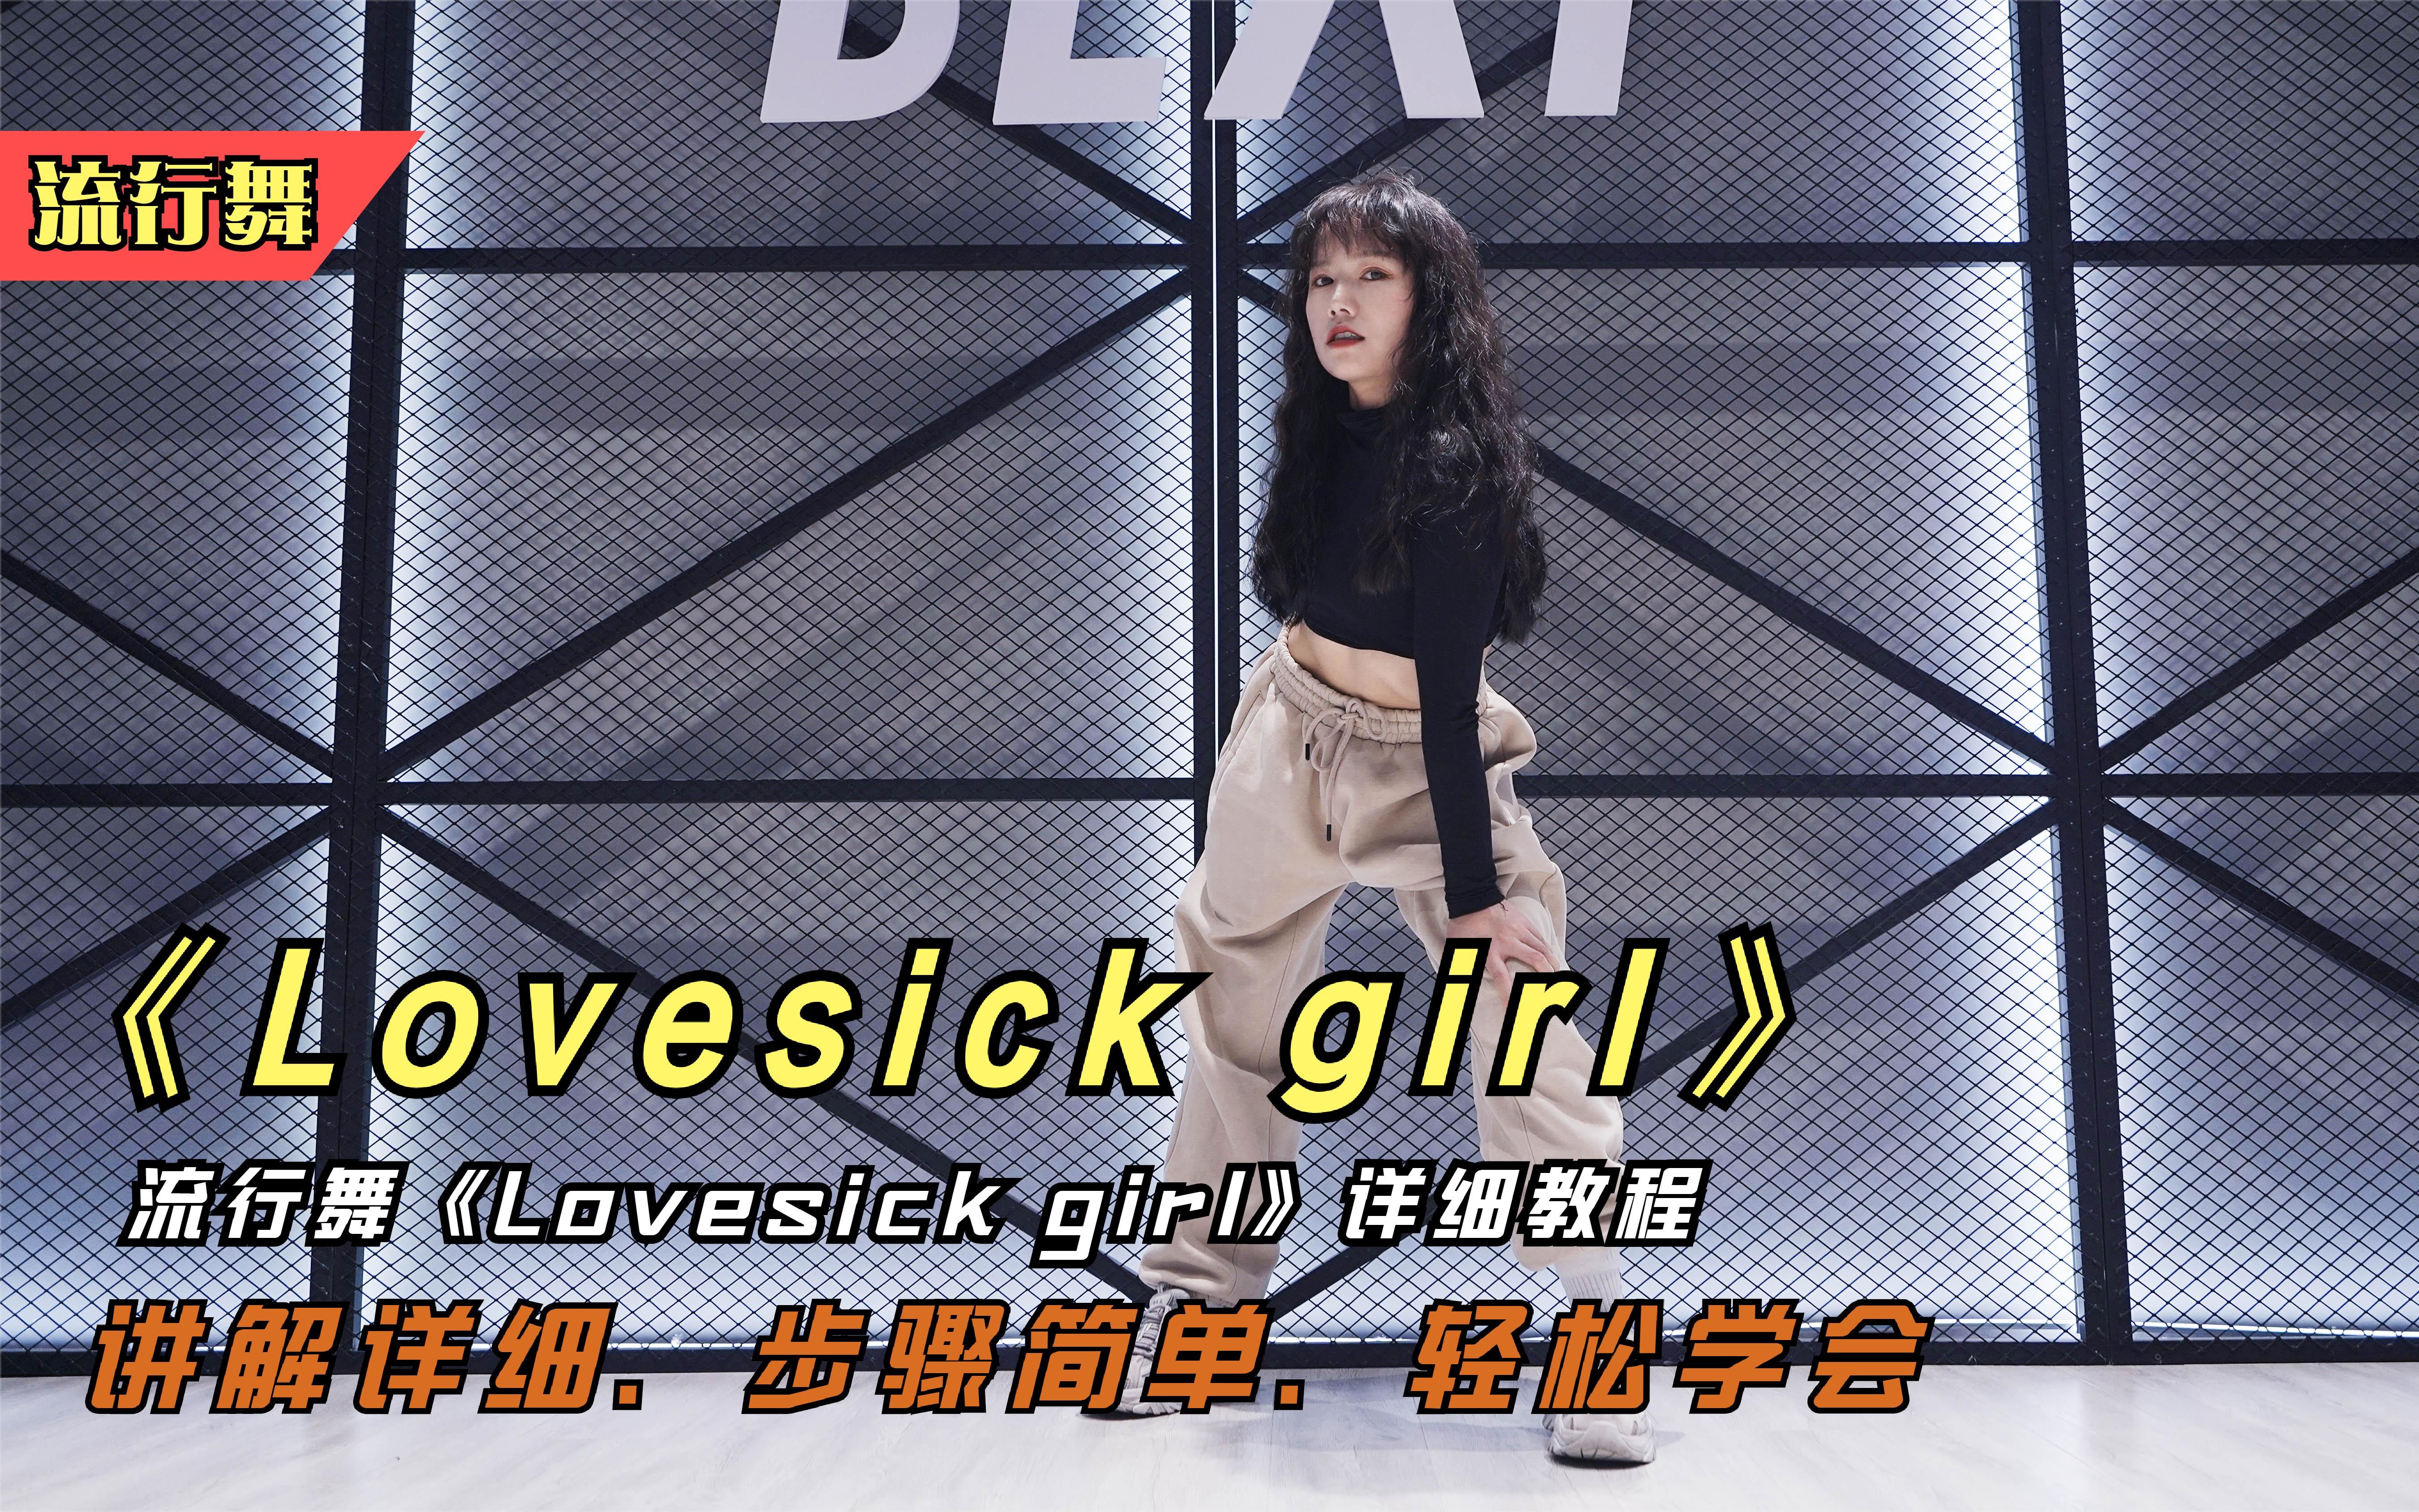 流行舞《Lovesick girl》，详细完整版教程，简单易学